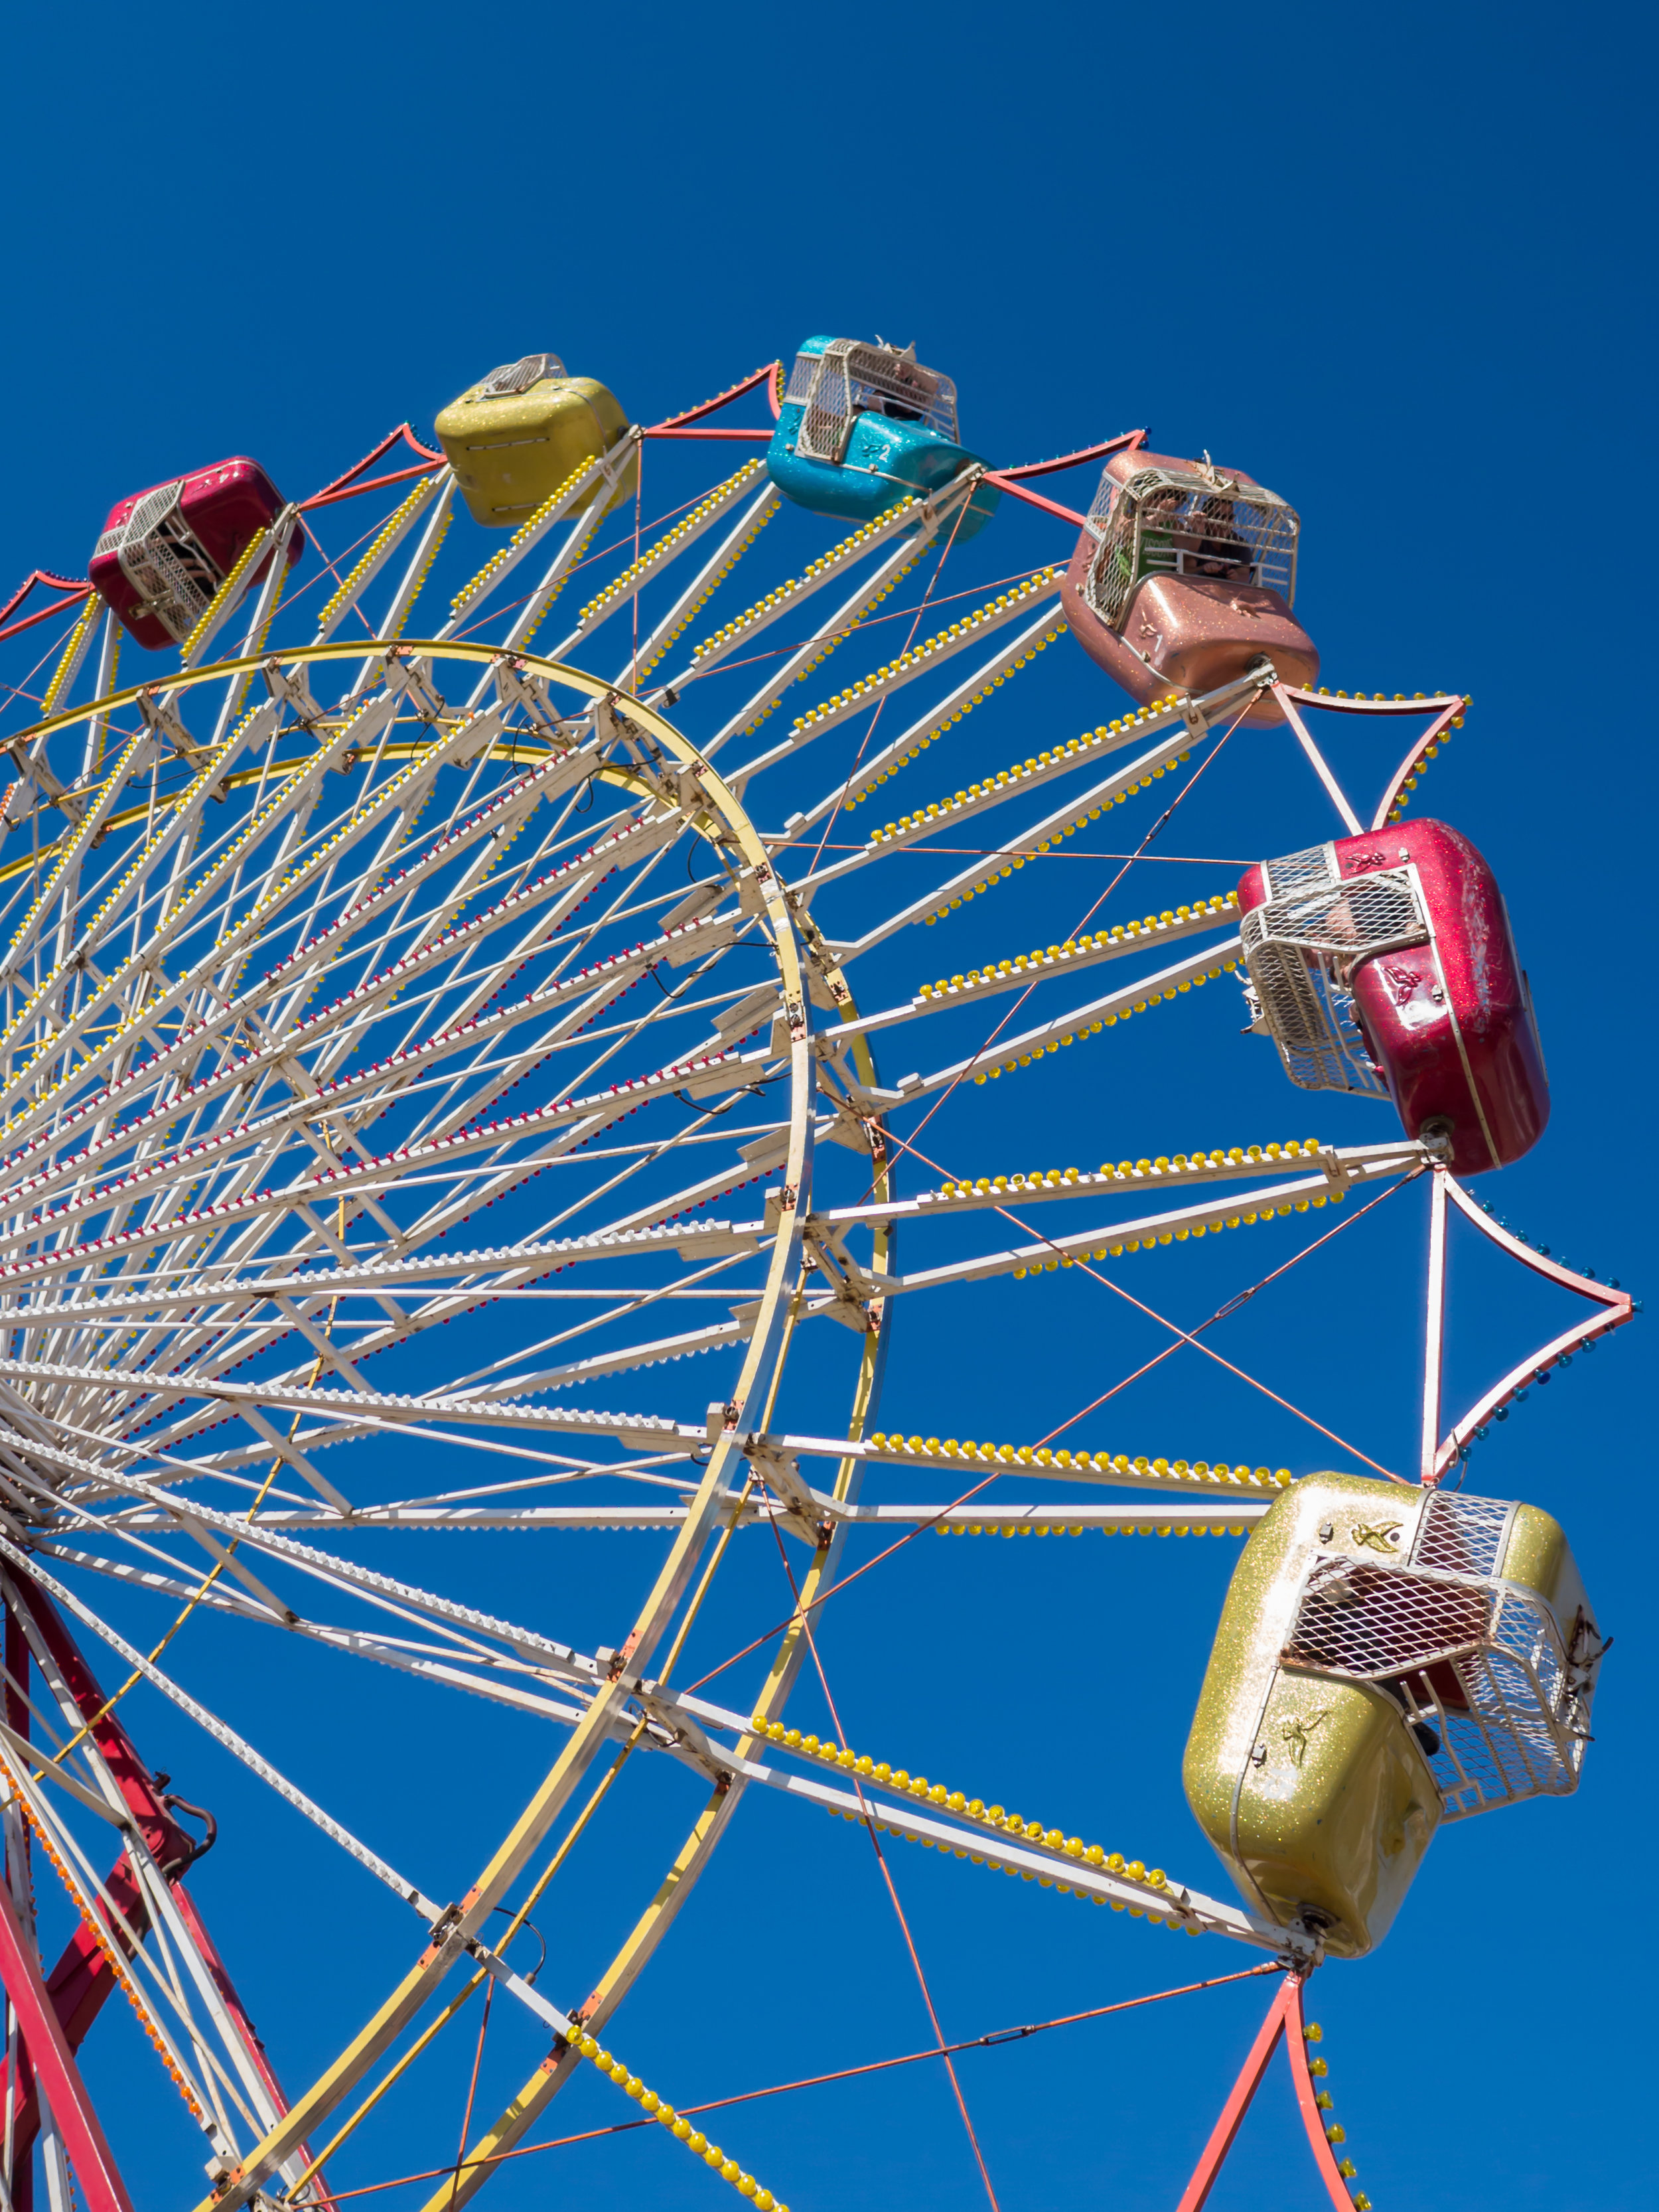 Ferris Wheel at the Blue Hill Fair